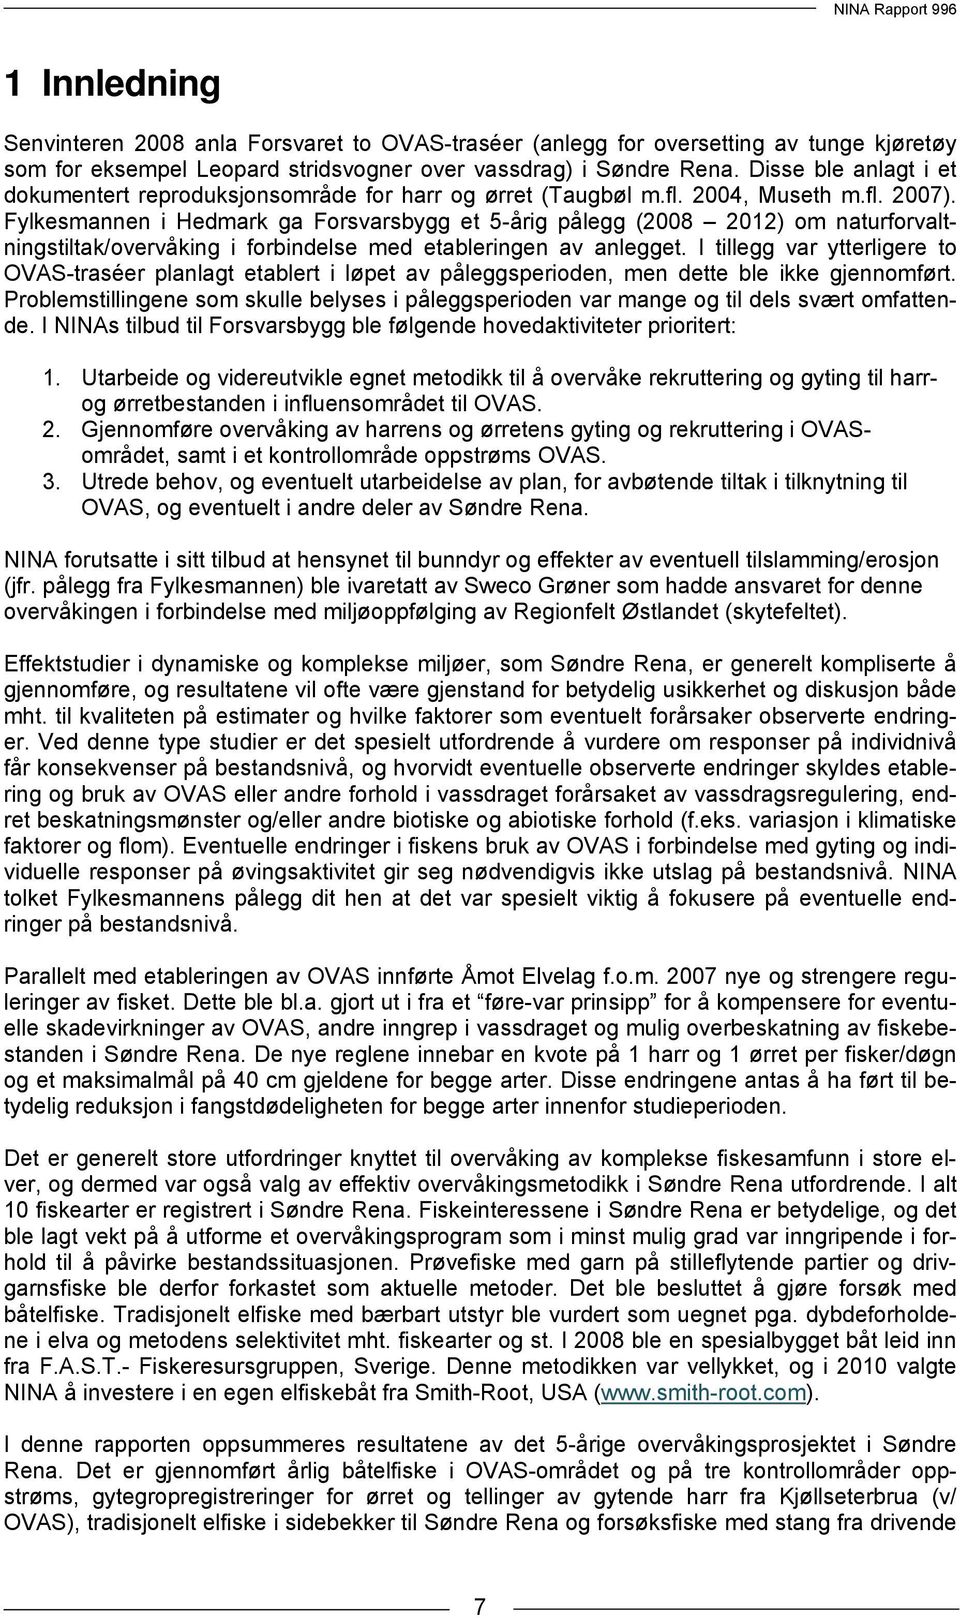 Fylkesmannen i Hedmark ga Forsvarsbygg et 5-årig pålegg (2008 2012) om naturforvaltningstiltak/overvåking i forbindelse med etableringen av anlegget.